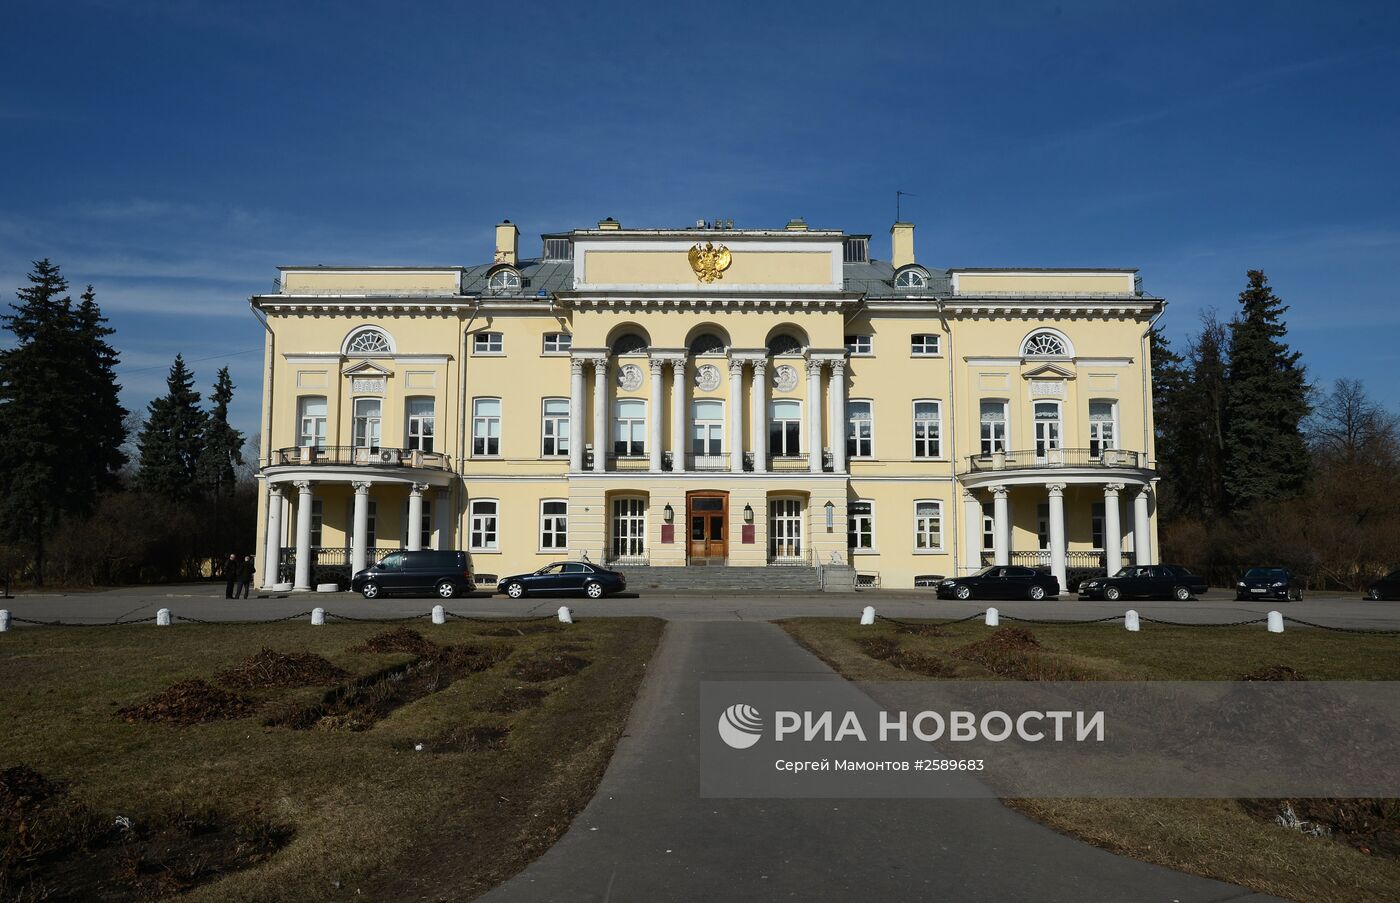 Вице-премьер РФ Д.Рогозин посетил заседание президиума РАН